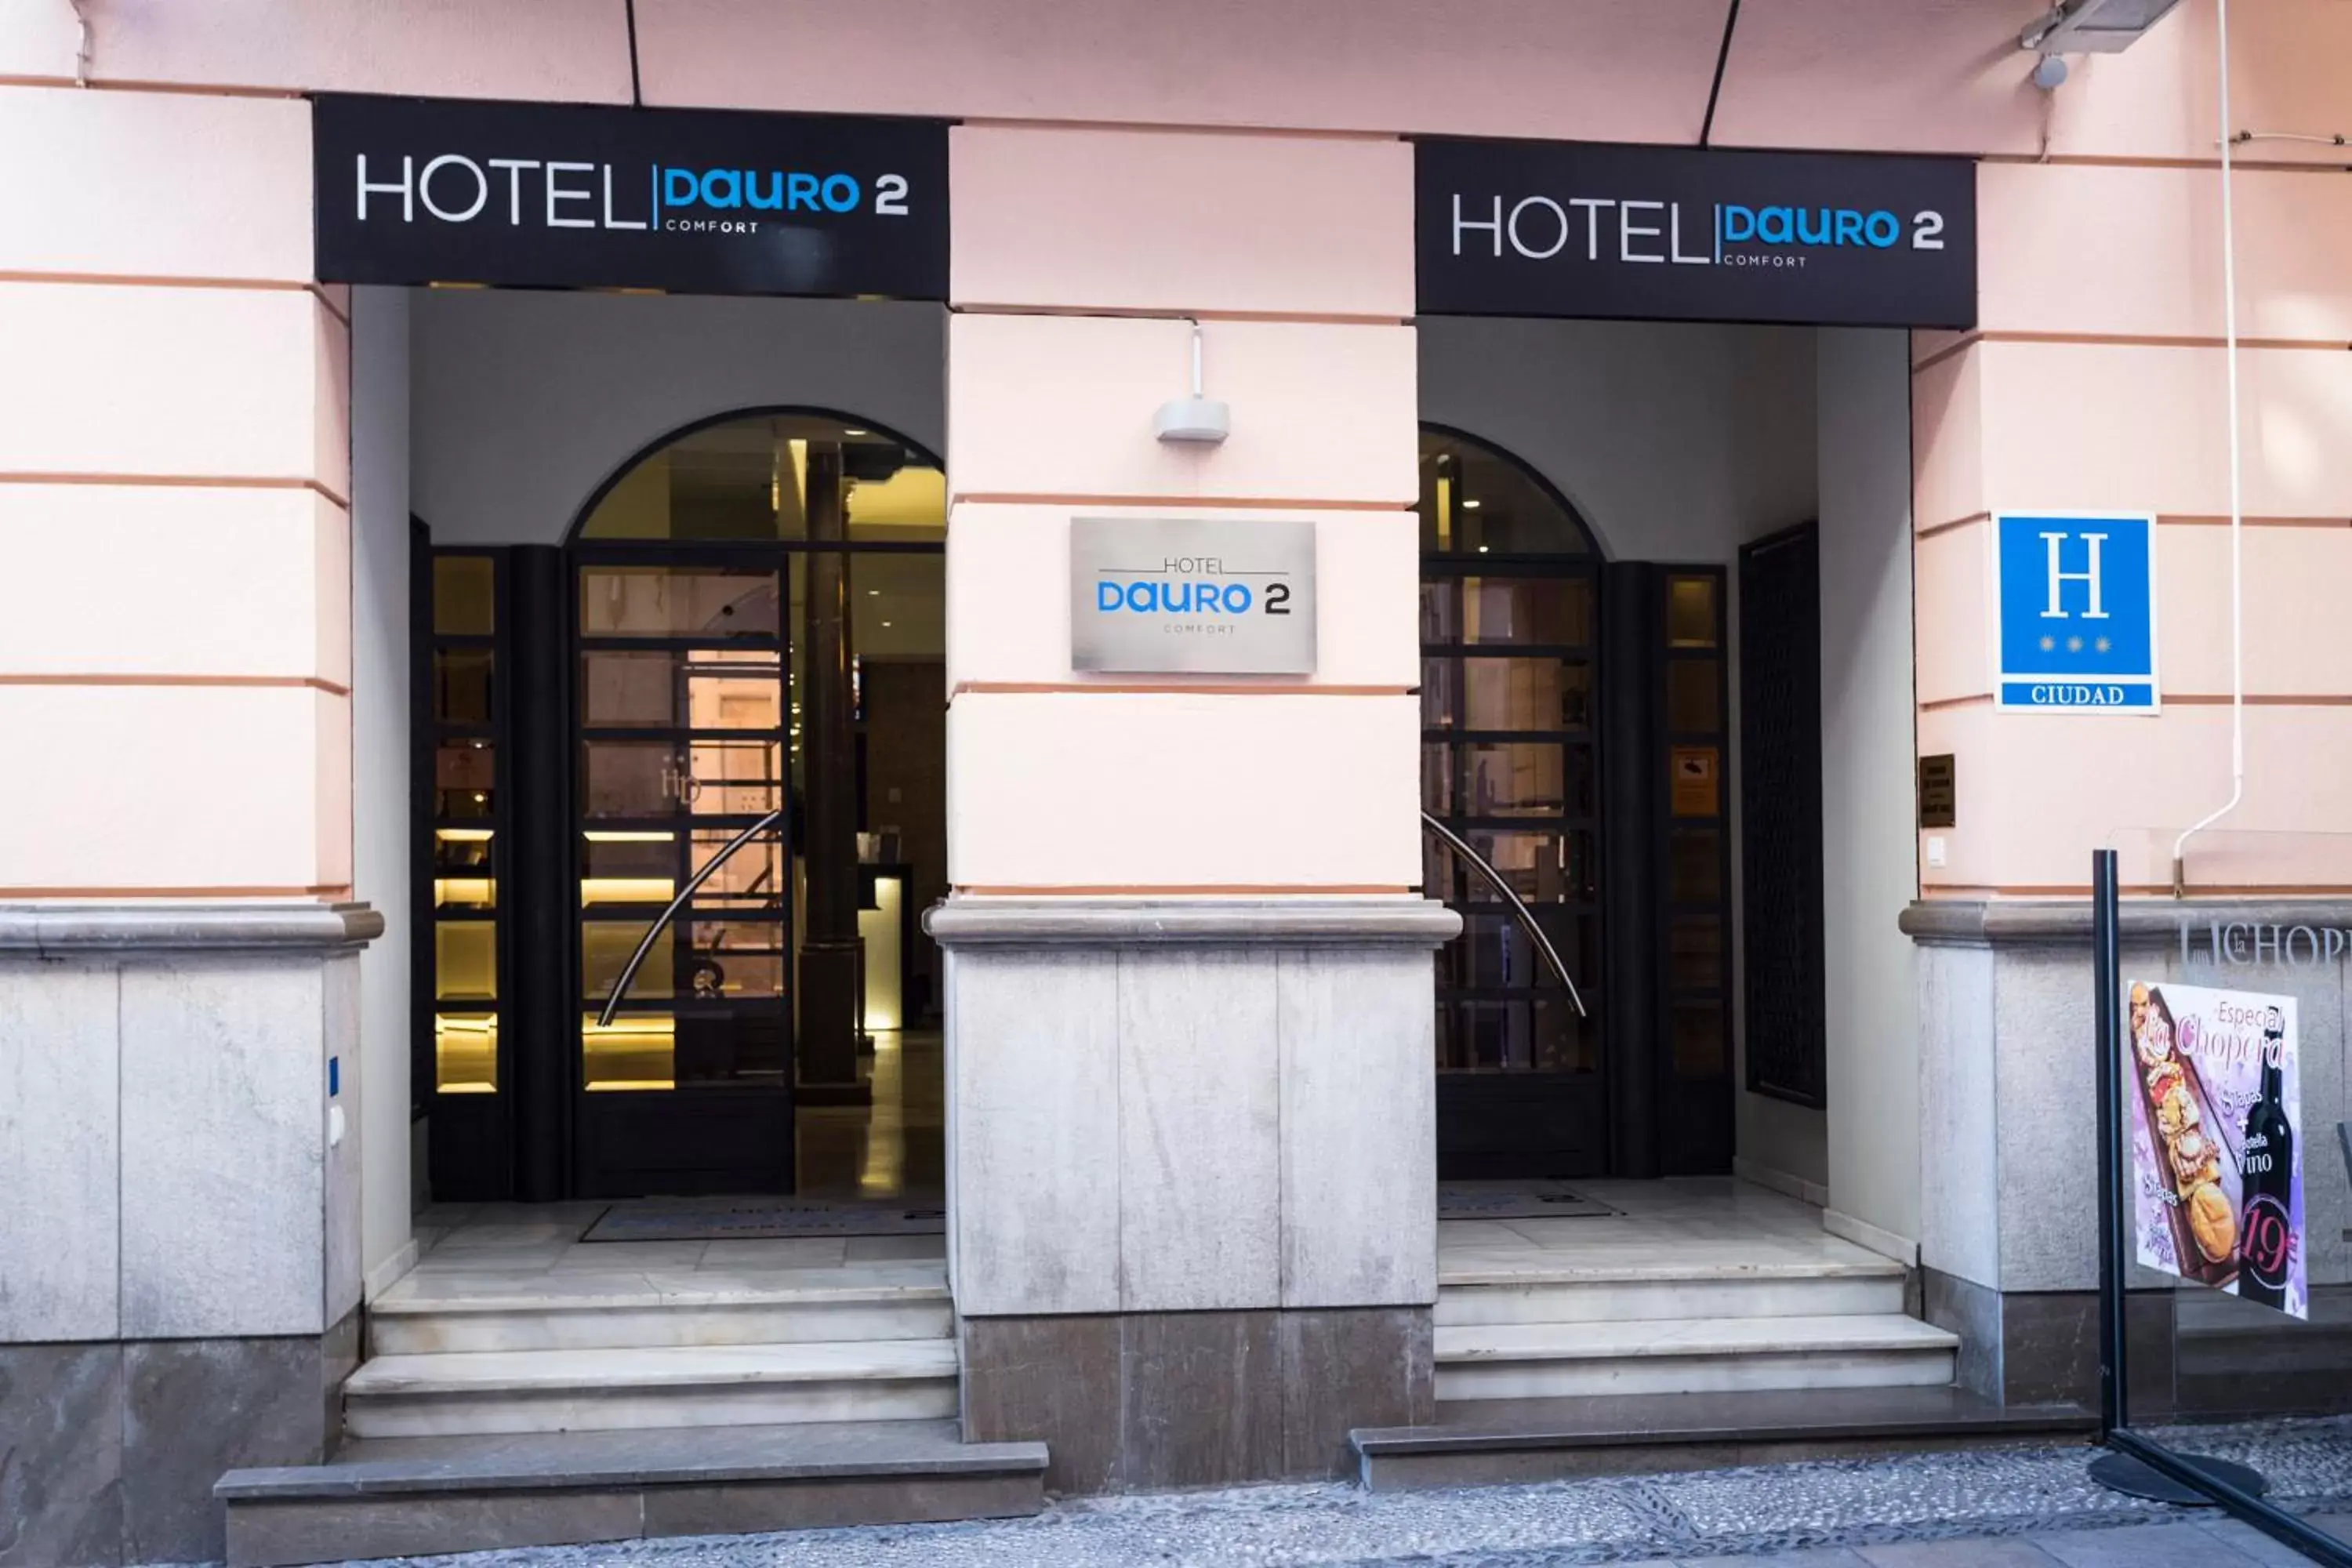 Facade/entrance in Hotel Comfort Dauro 2